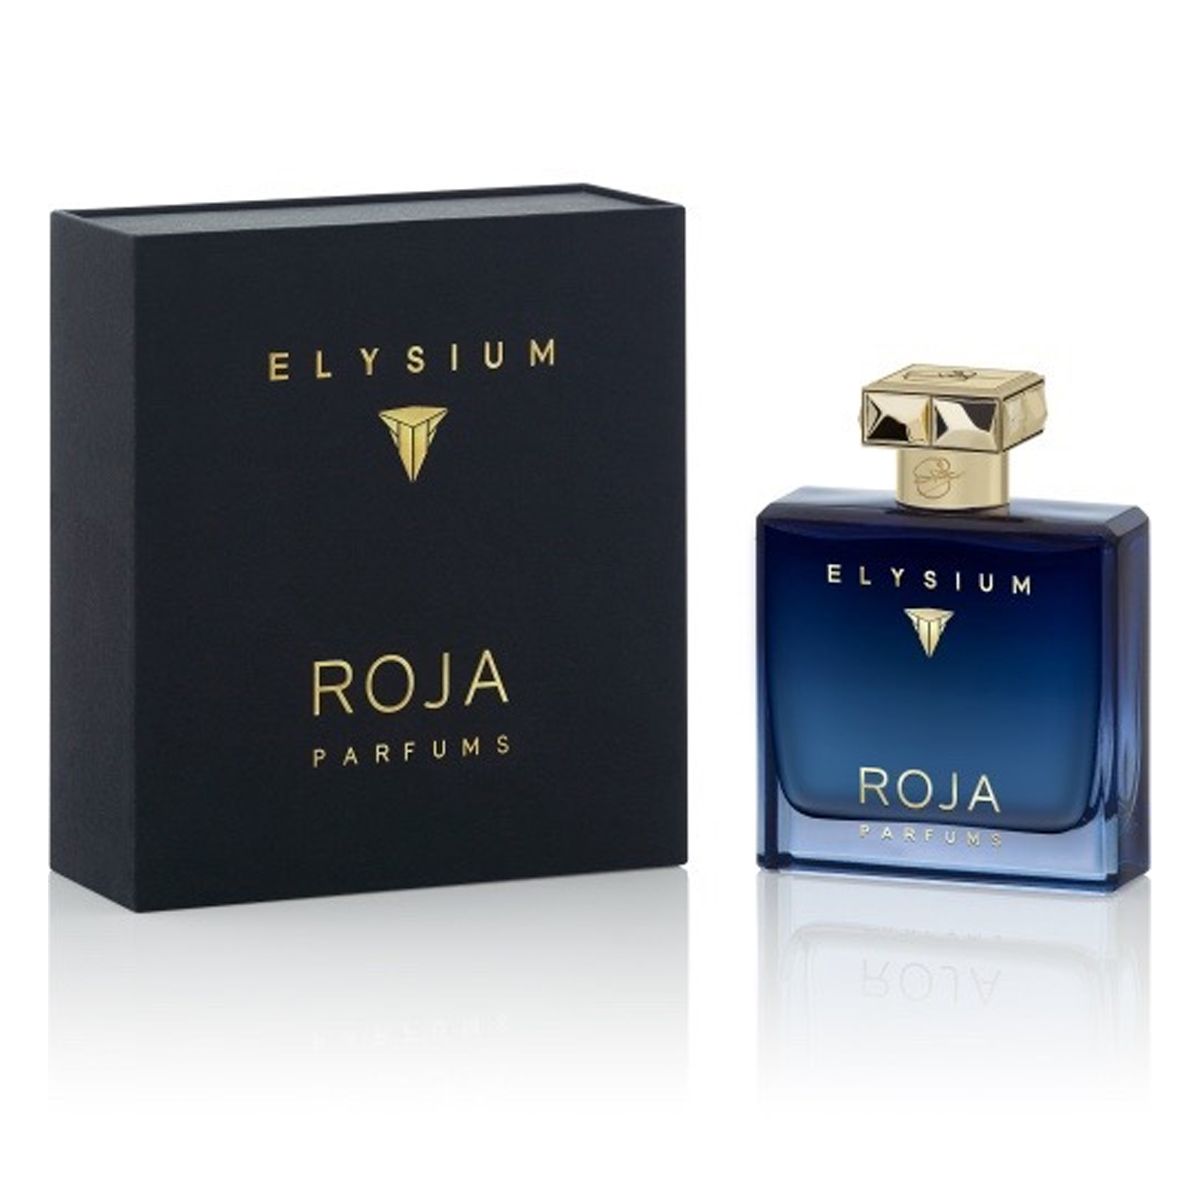  Roja Dove Elysium Pour Homme Parfum Cologne 